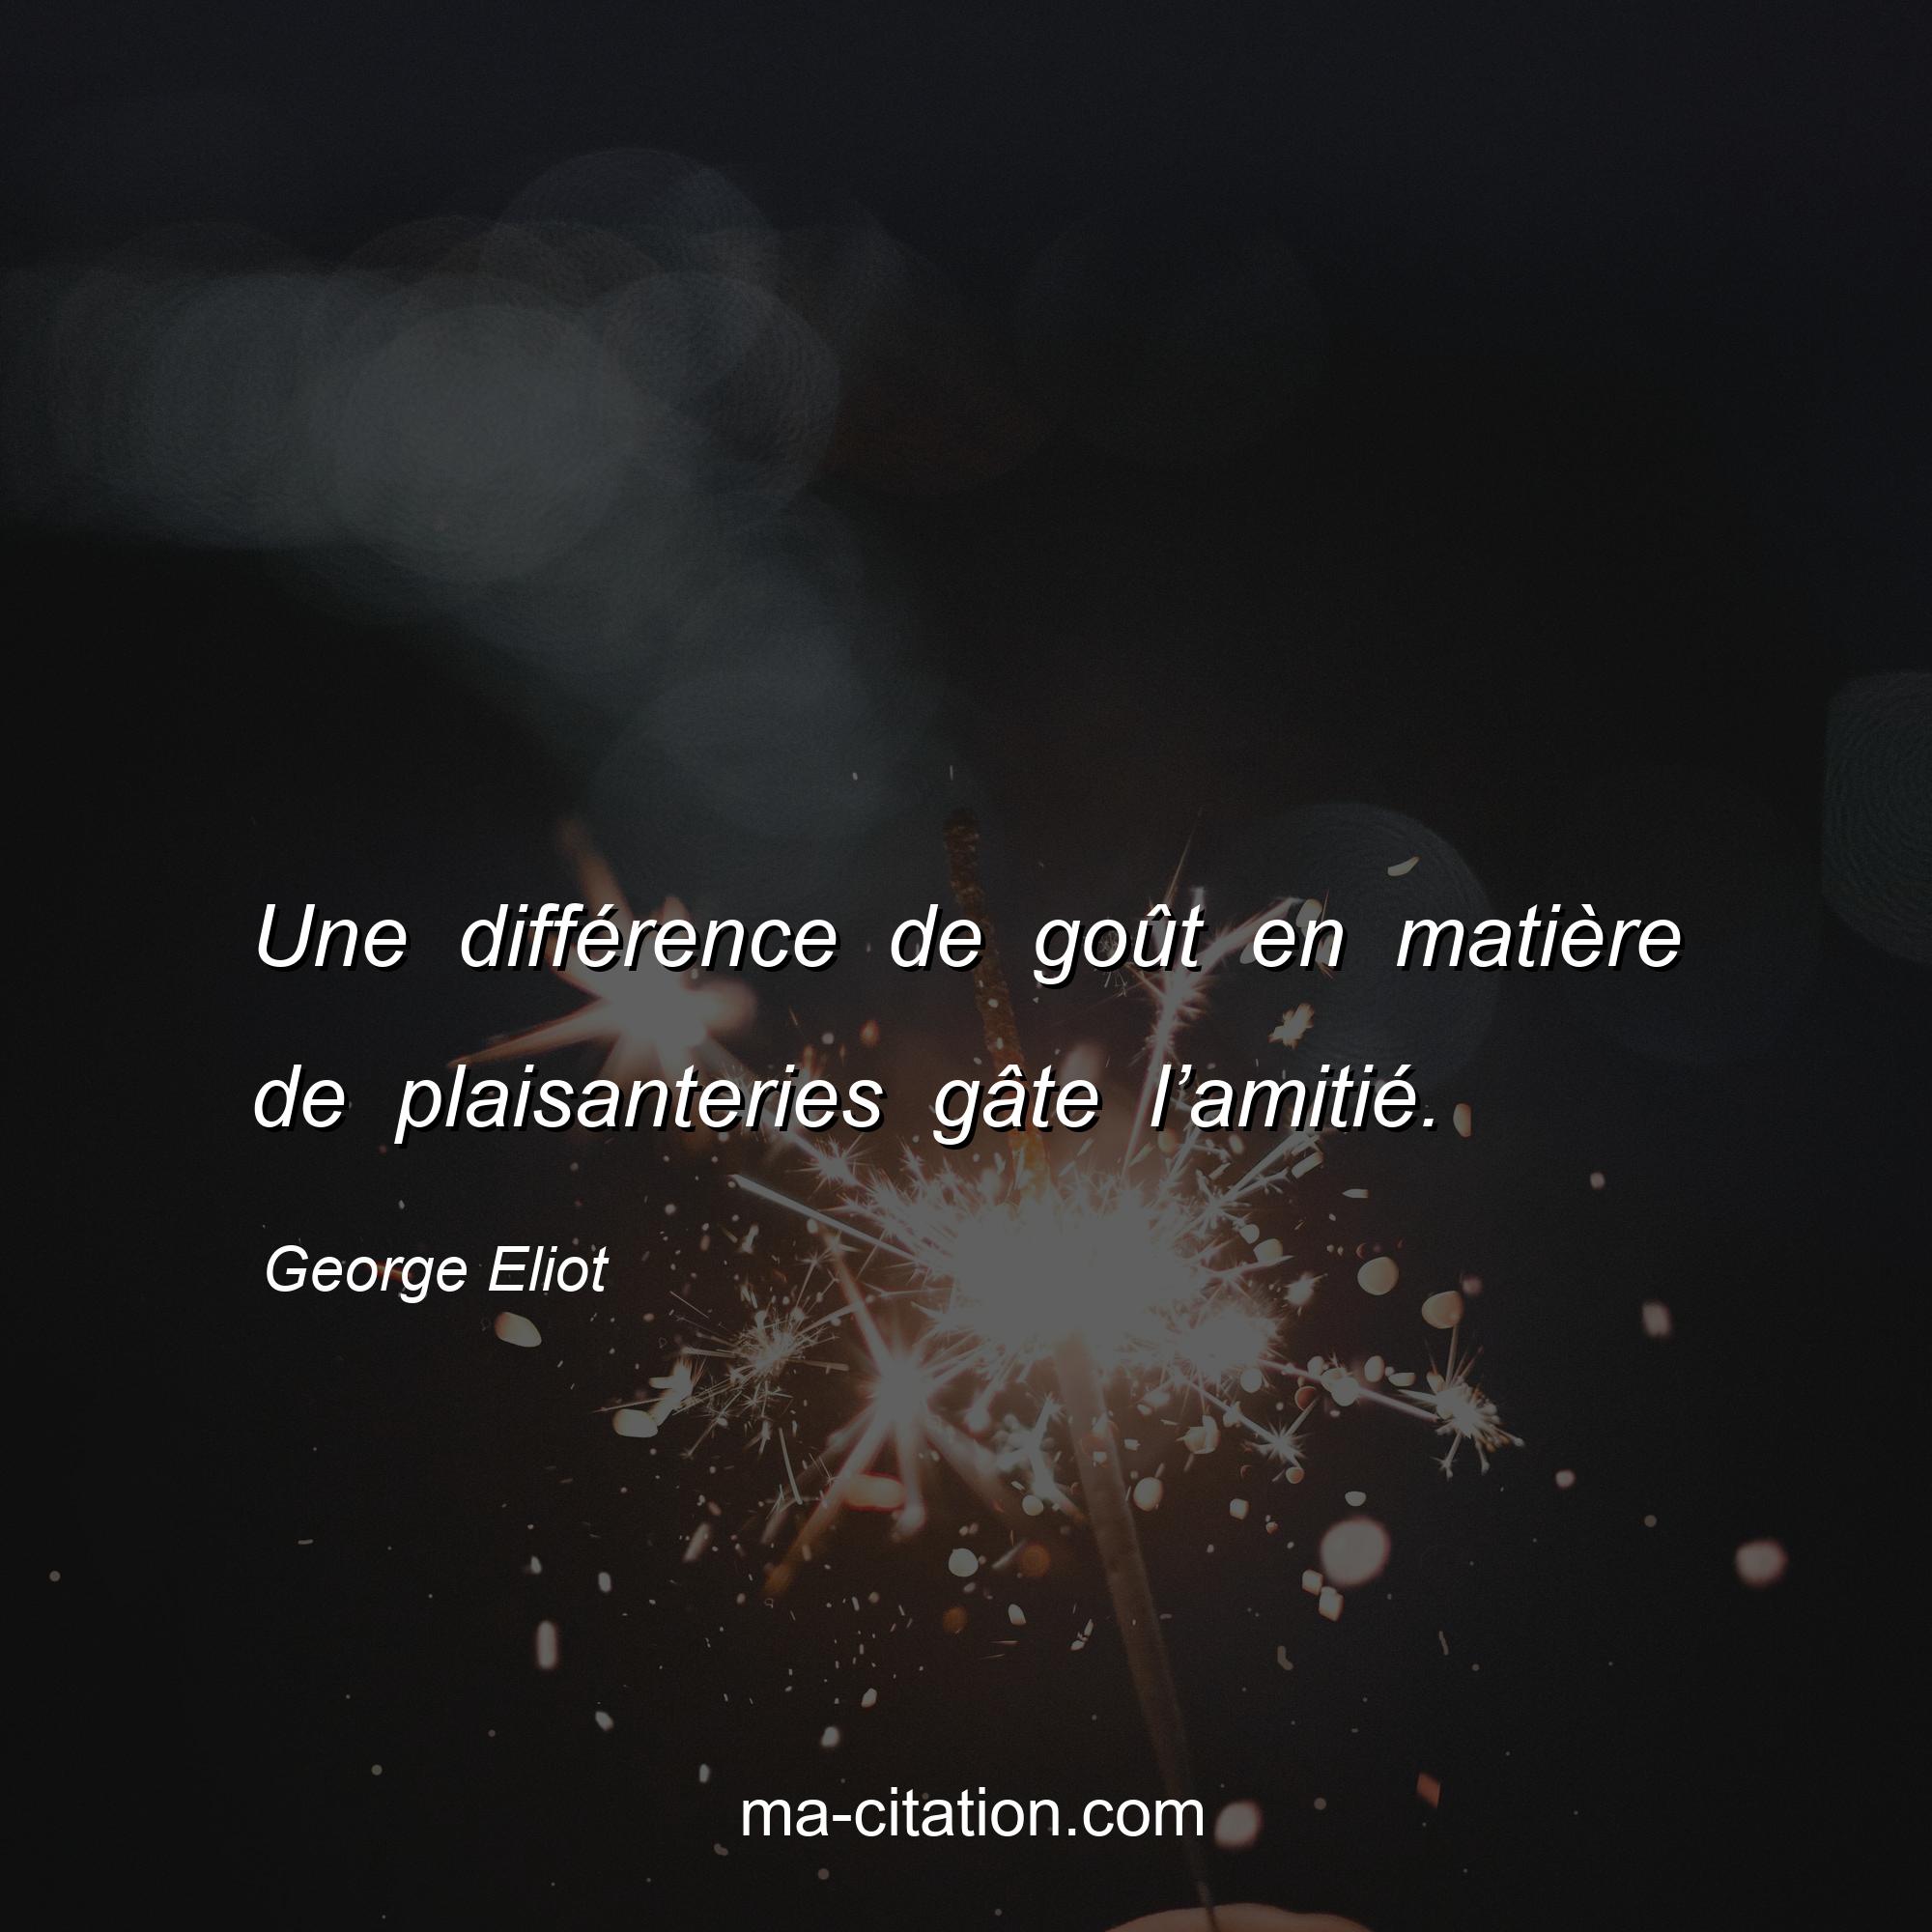 George Eliot : Une différence de goût en matière de plaisanteries gâte l’amitié.